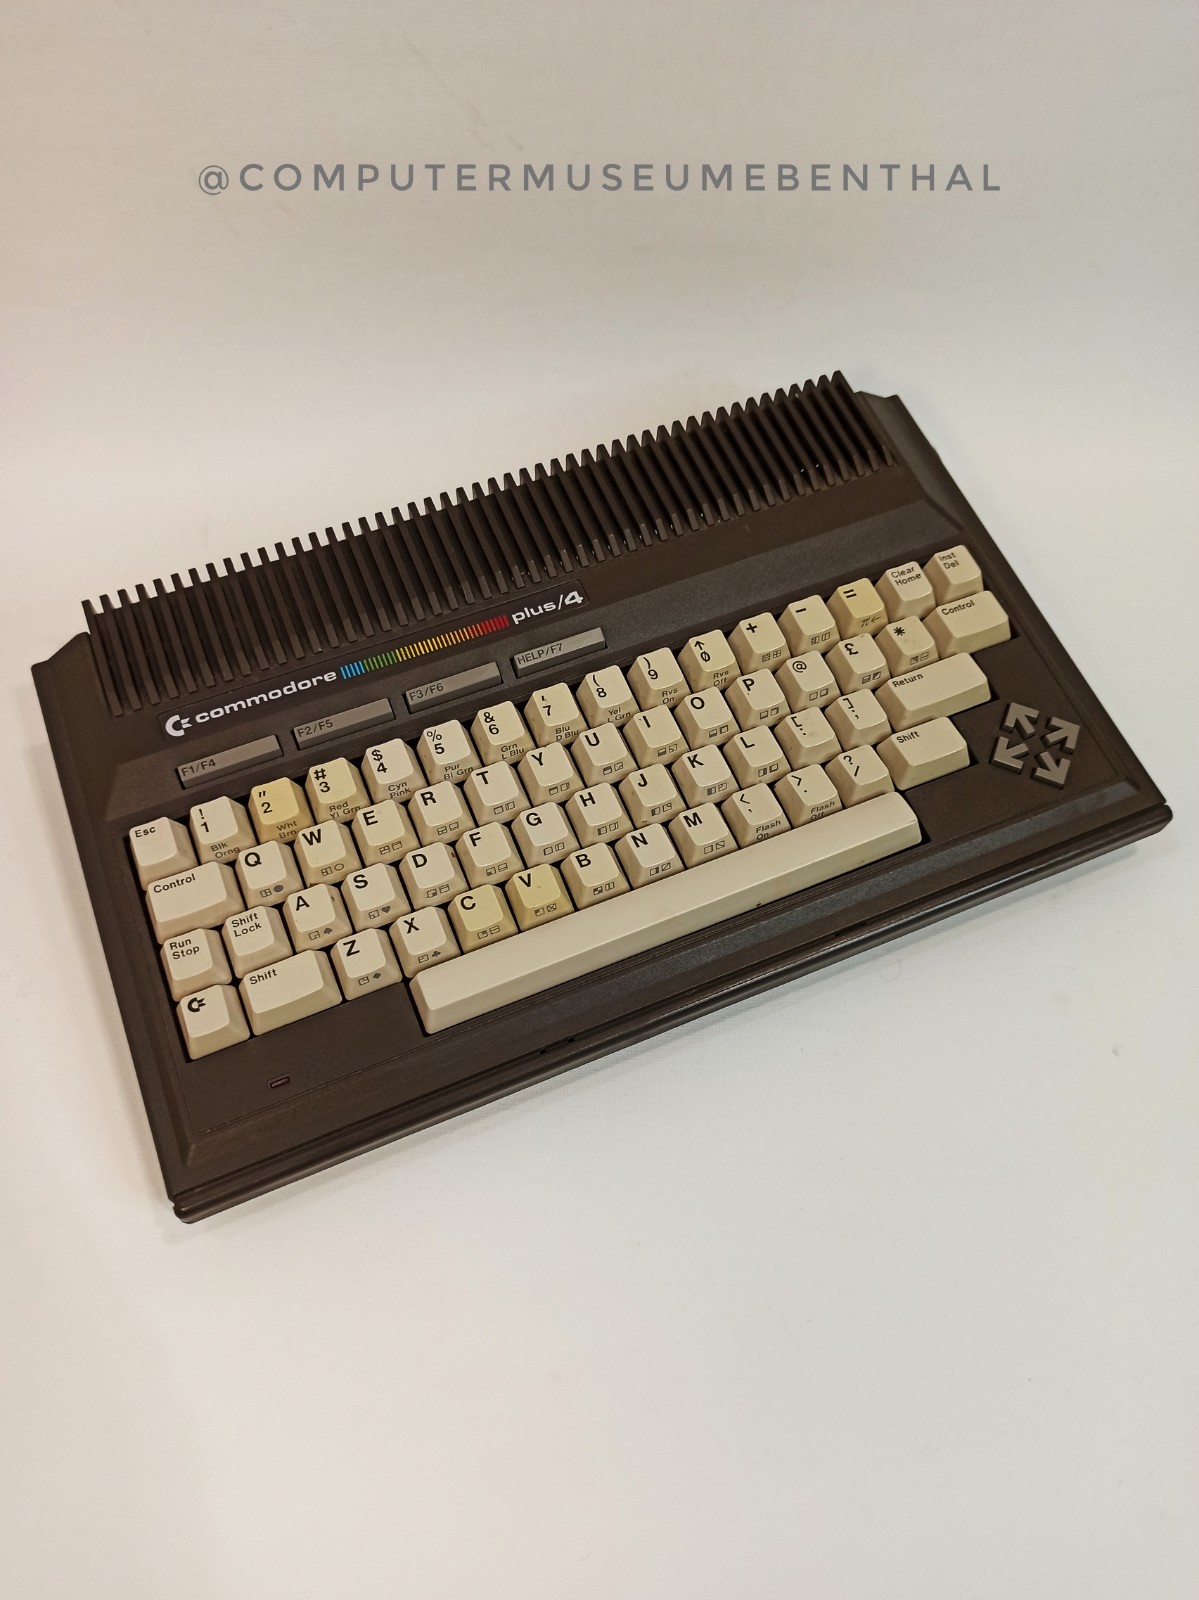 Commodore plus4